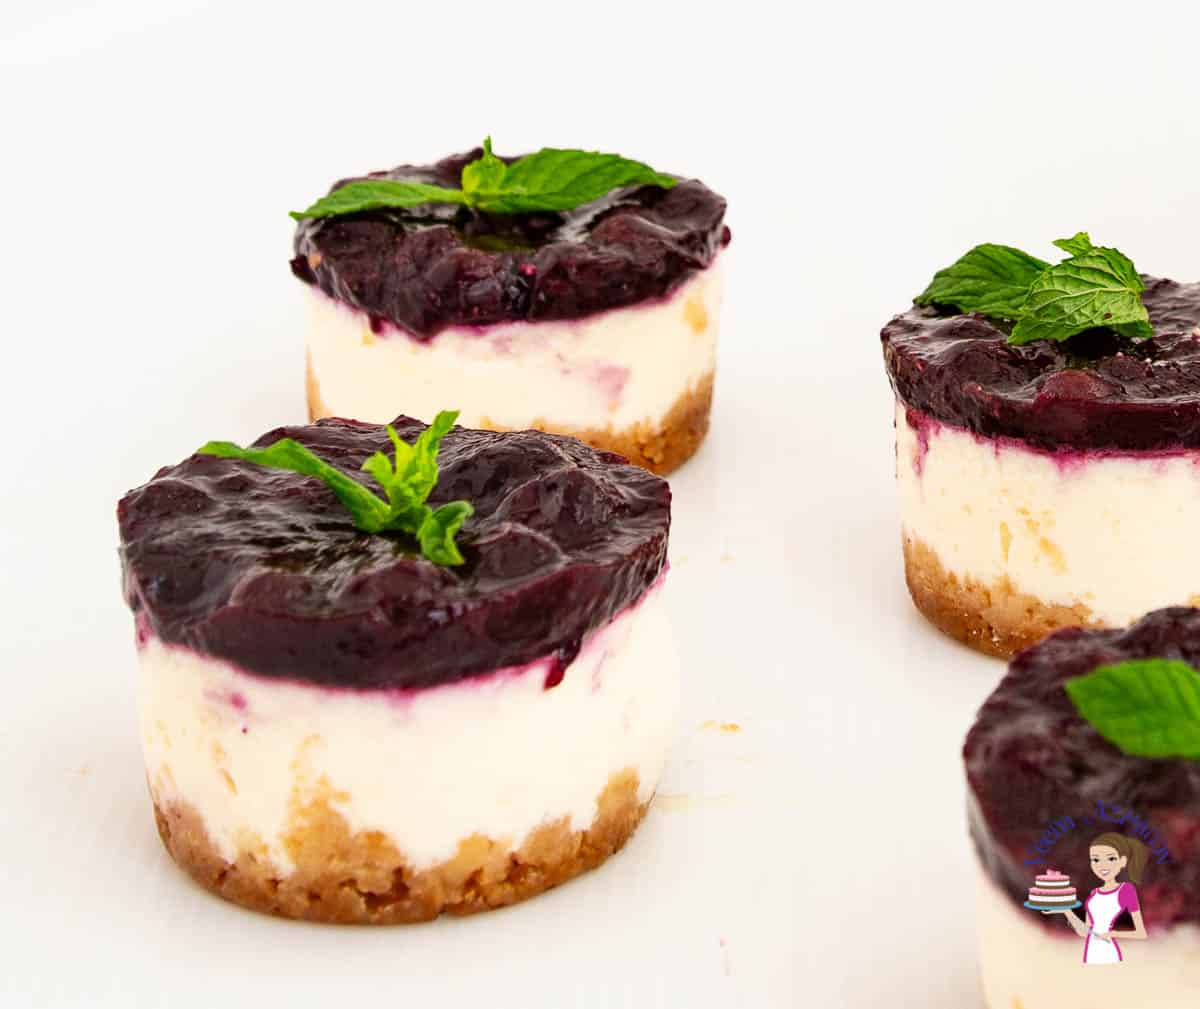 Mini blueberry cheesecakes.